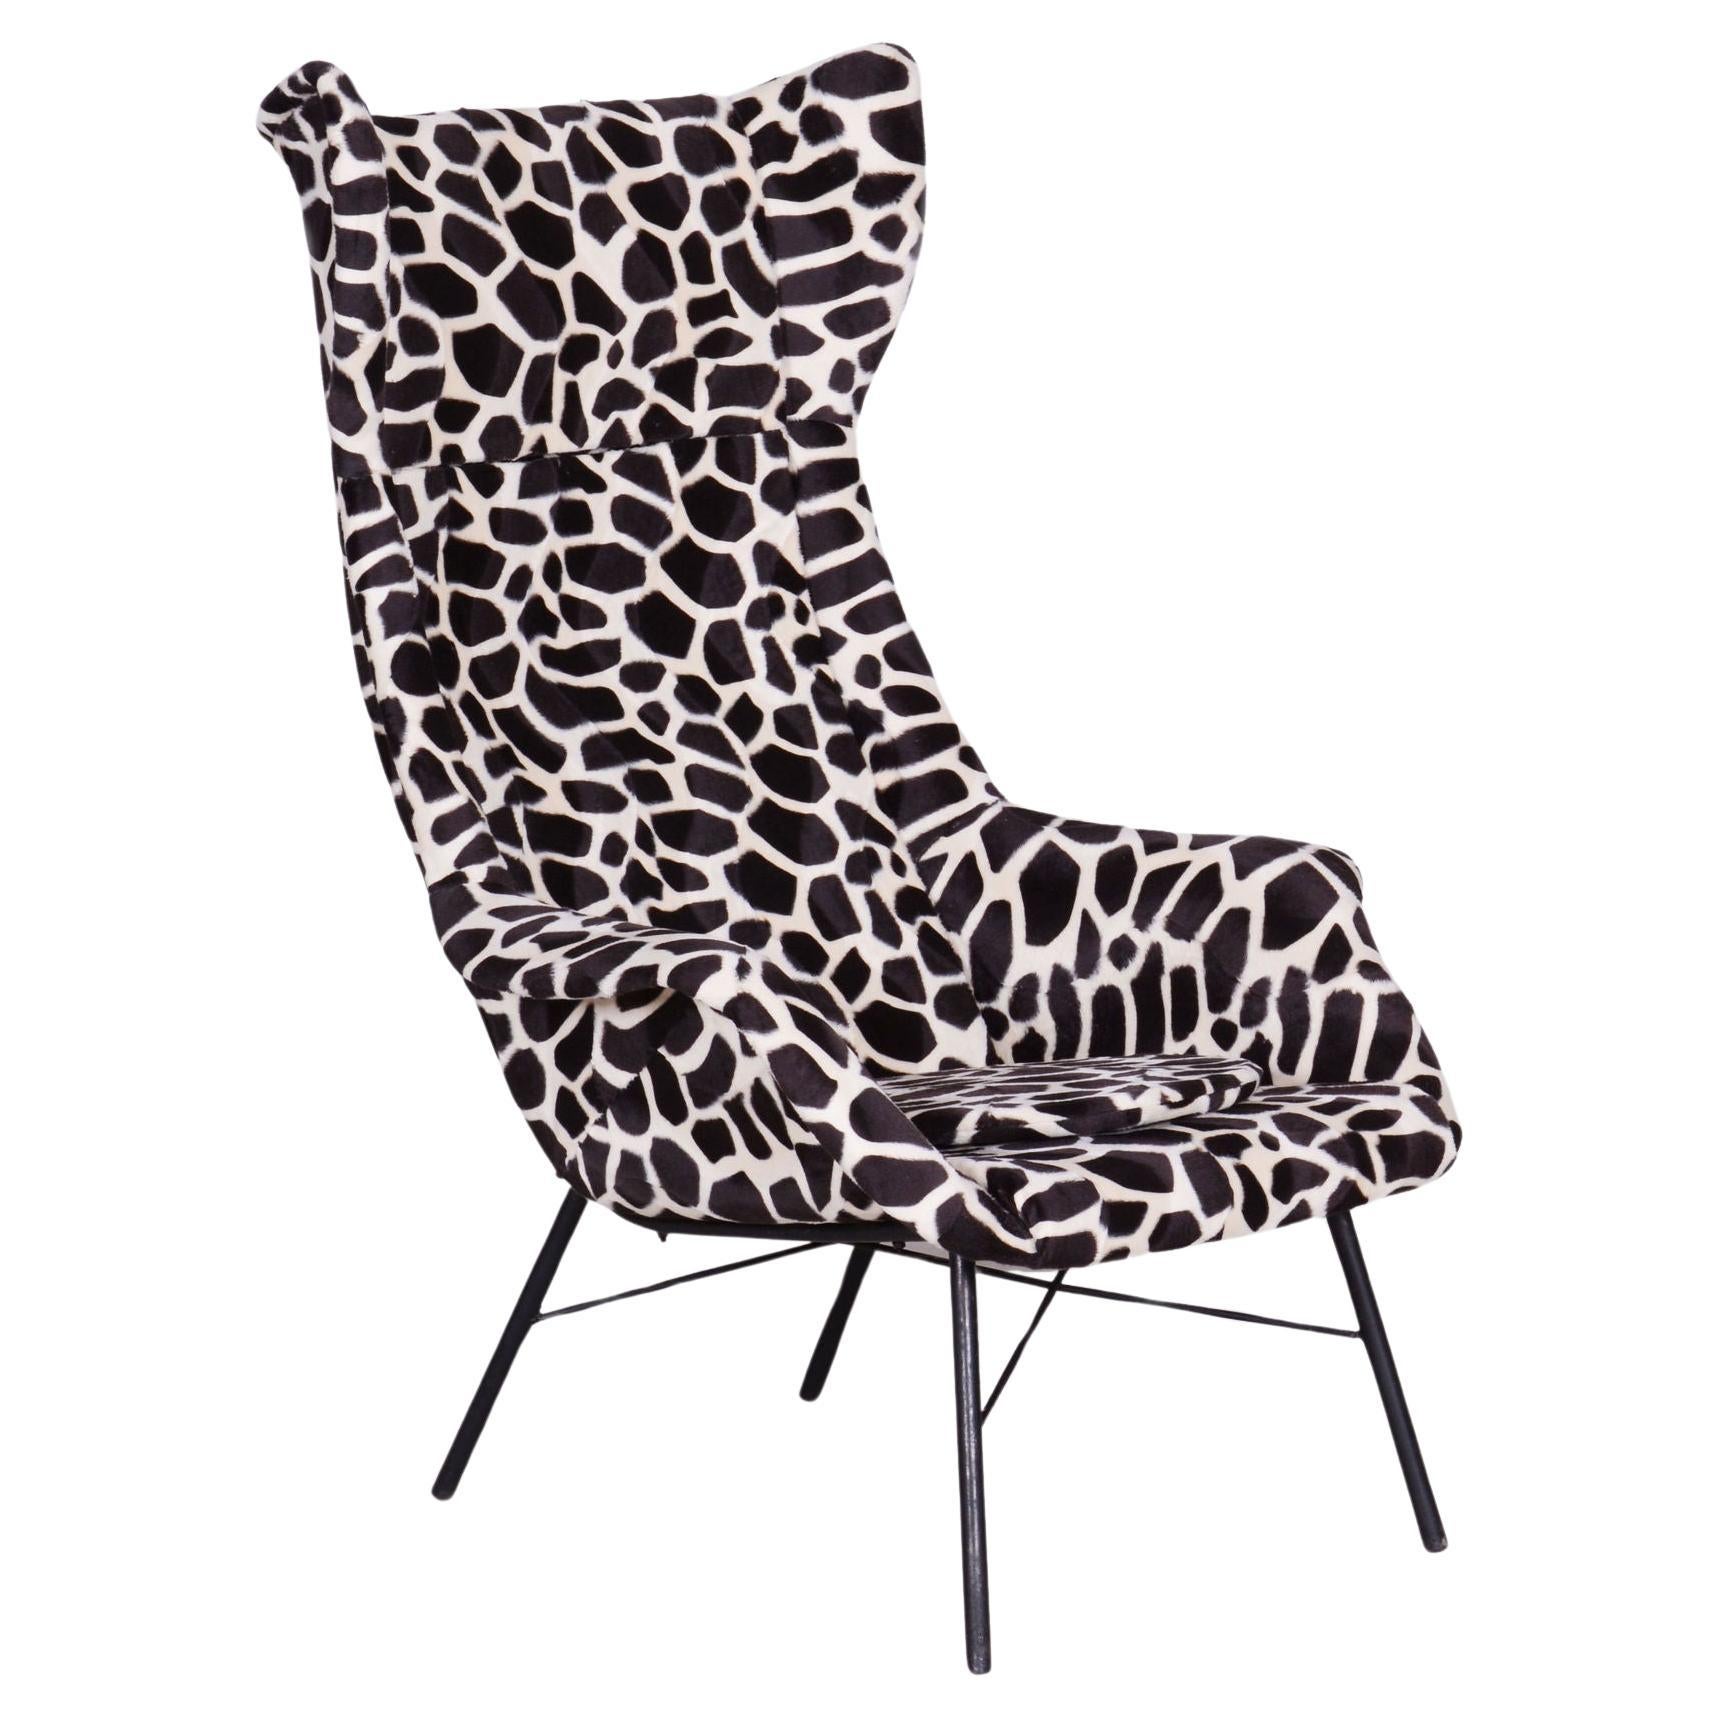 Restored Wingchair, Miroslav Navratil, Imitation Giraffe Fur, Czechia, 1950s For Sale